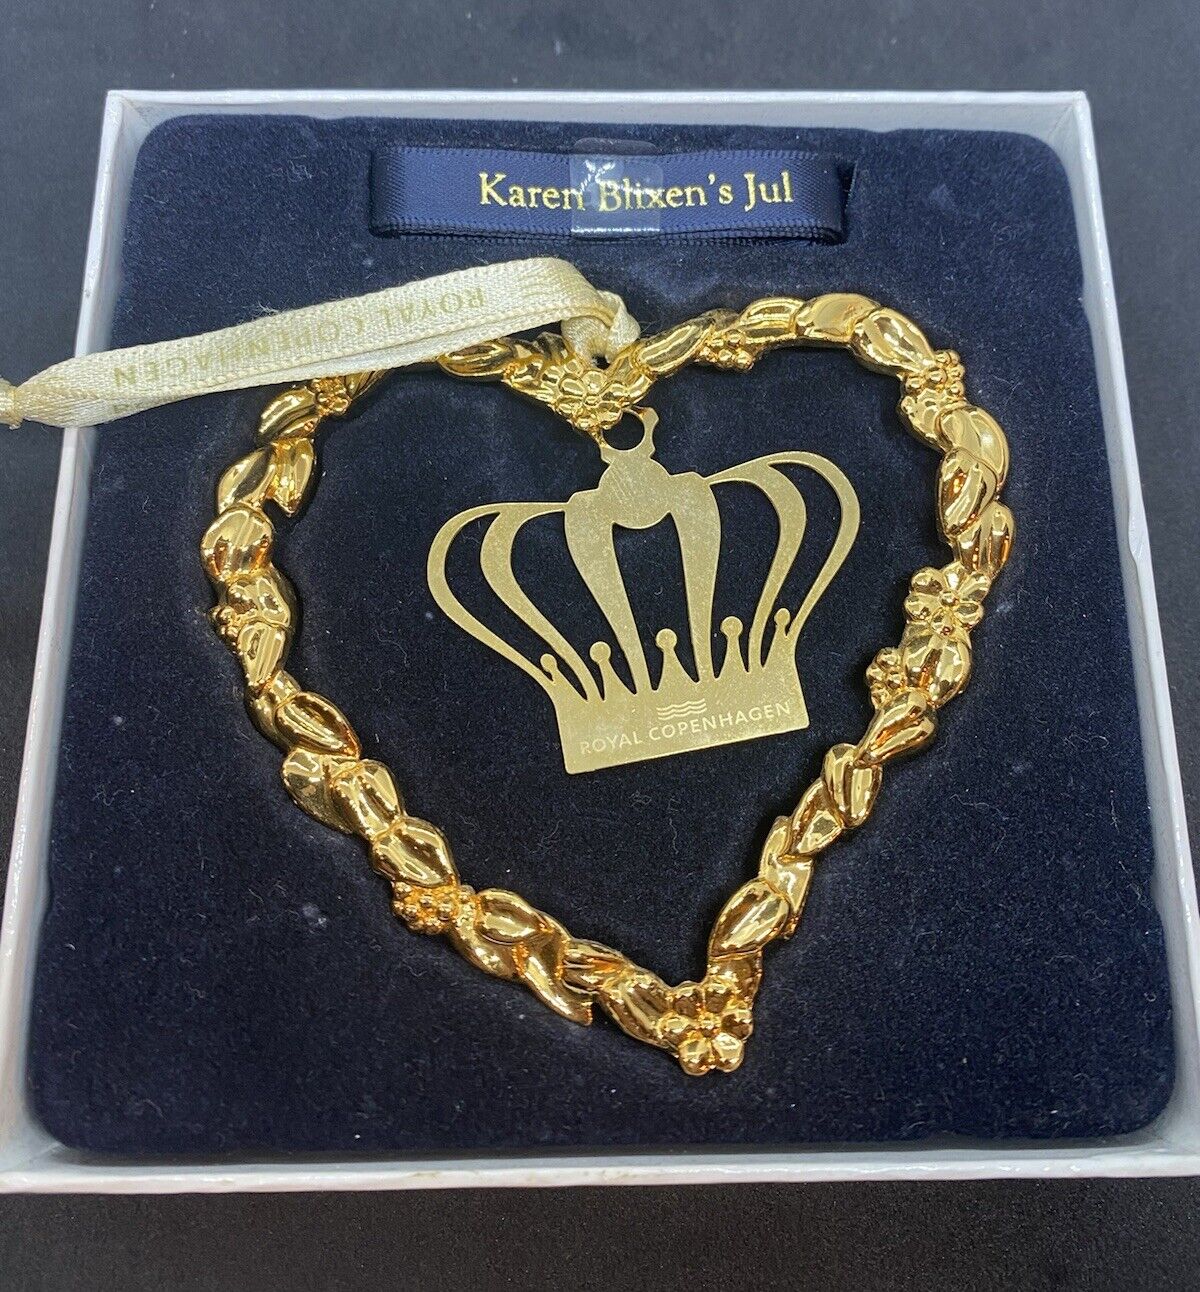 Rosendahl Karen Blixen Jul Danish Christmas Ornament Gold Heart - NEW IN BOX